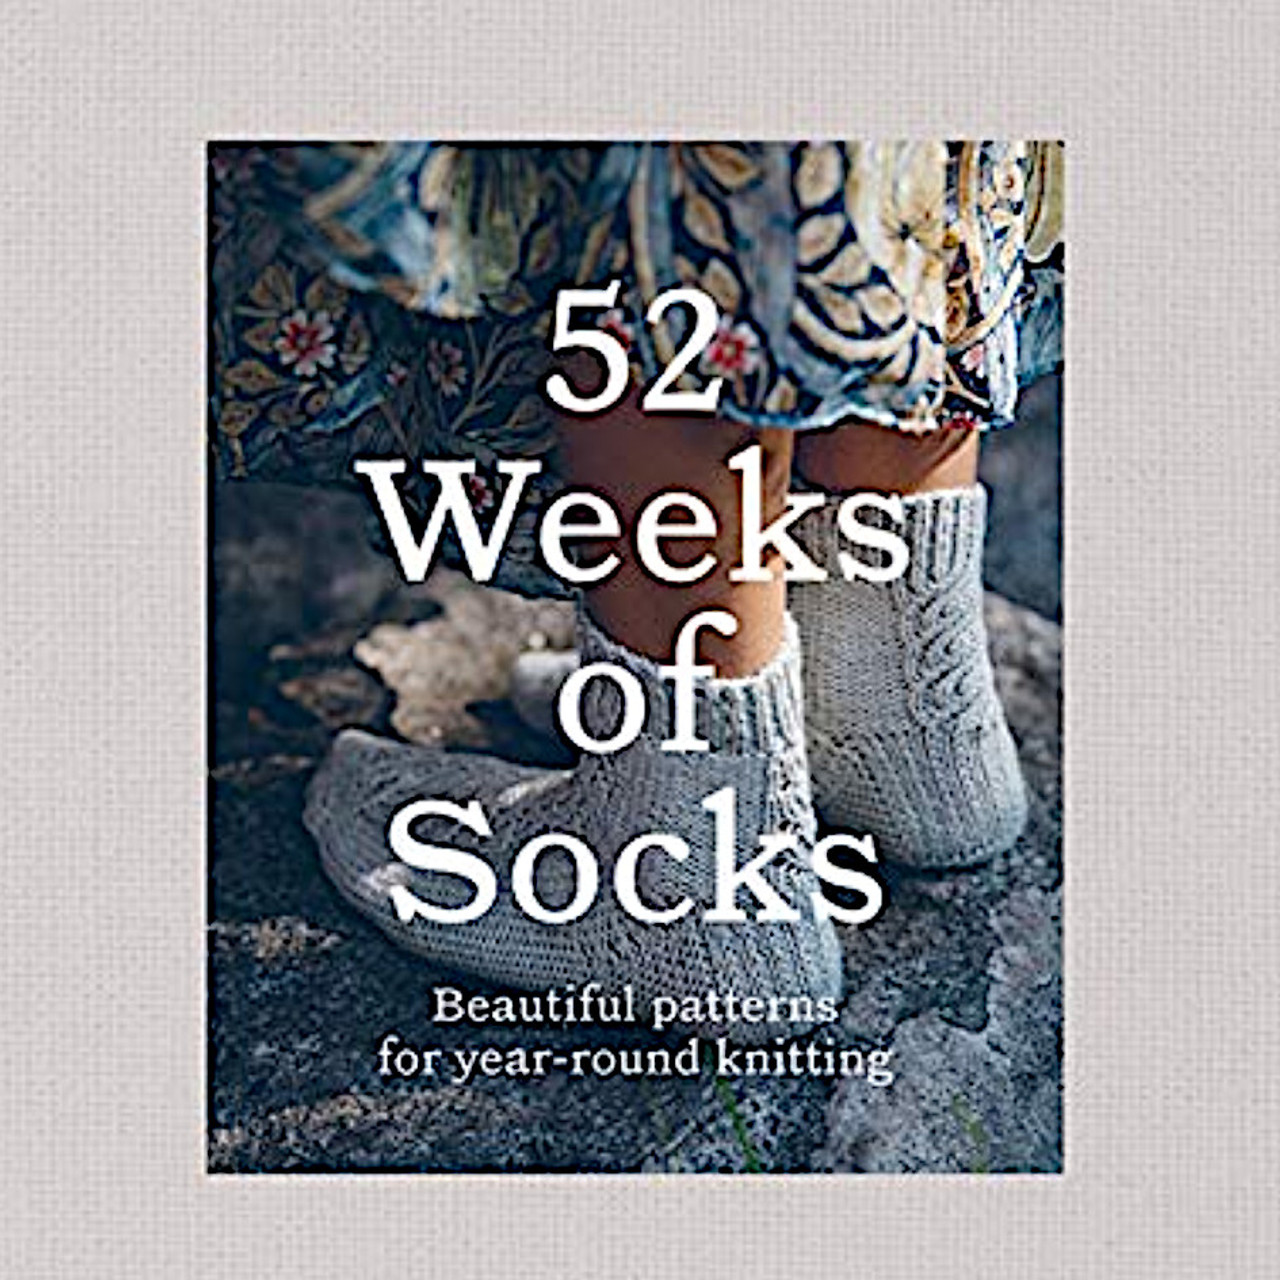 52 Weeks of Socks Vol. 2